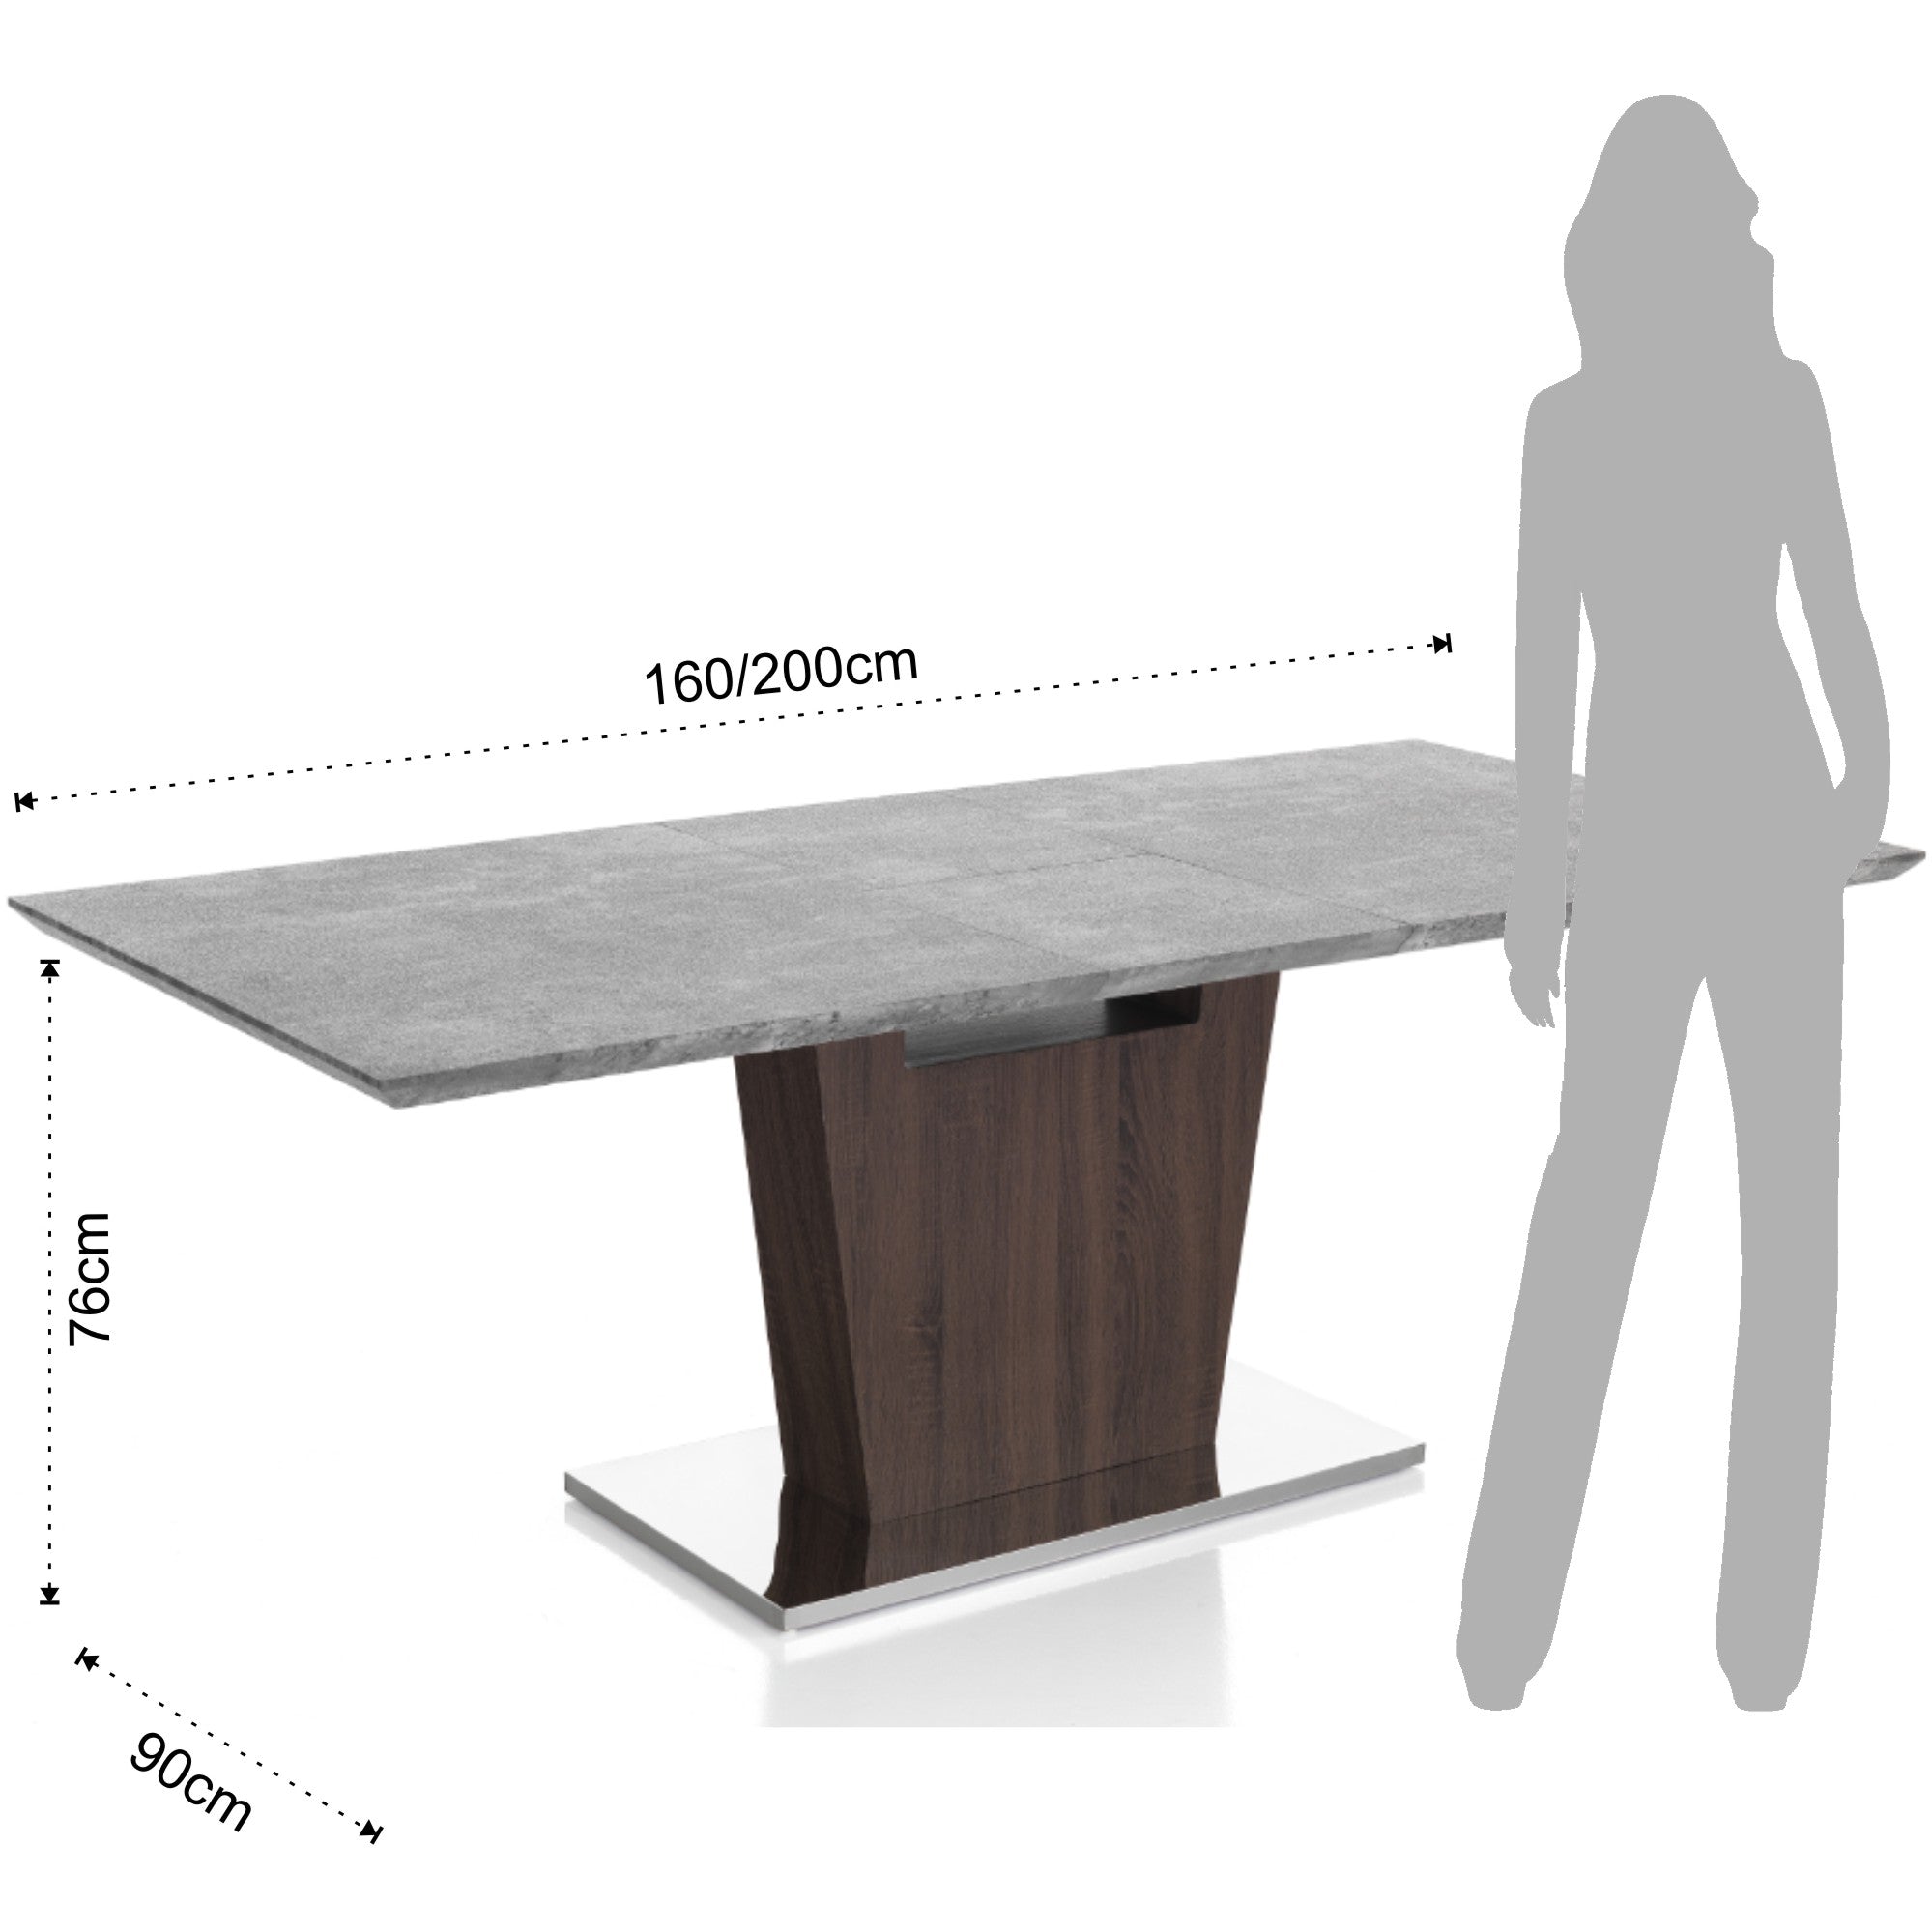 Extendable Table - Blitz Cement